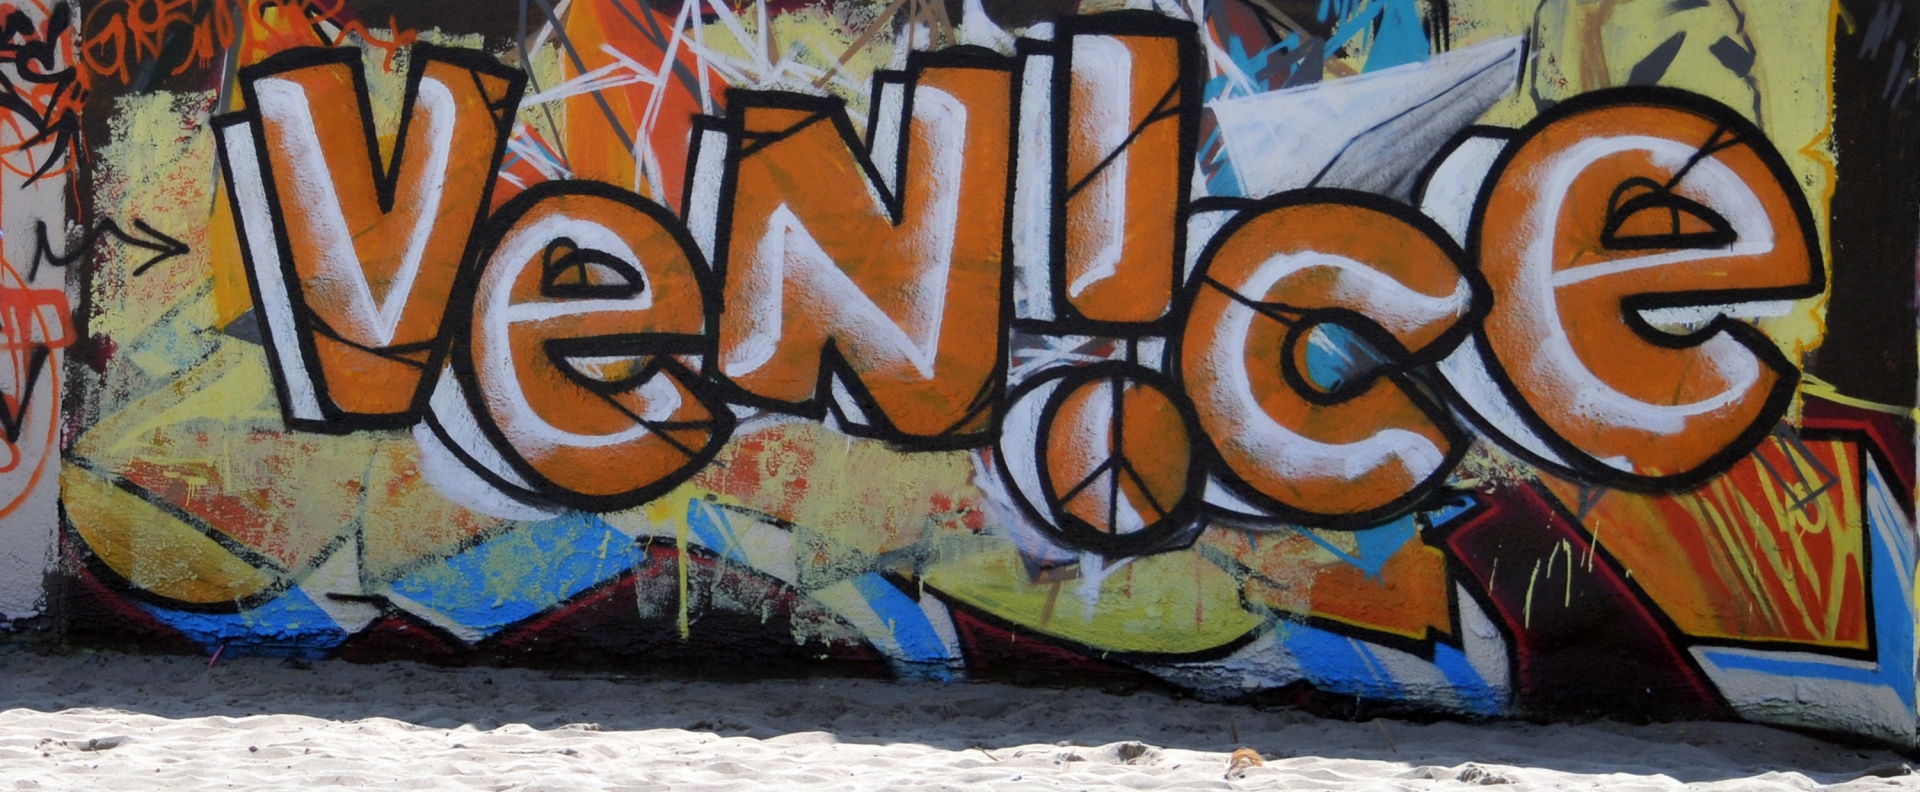 Венецианский стиль граффити